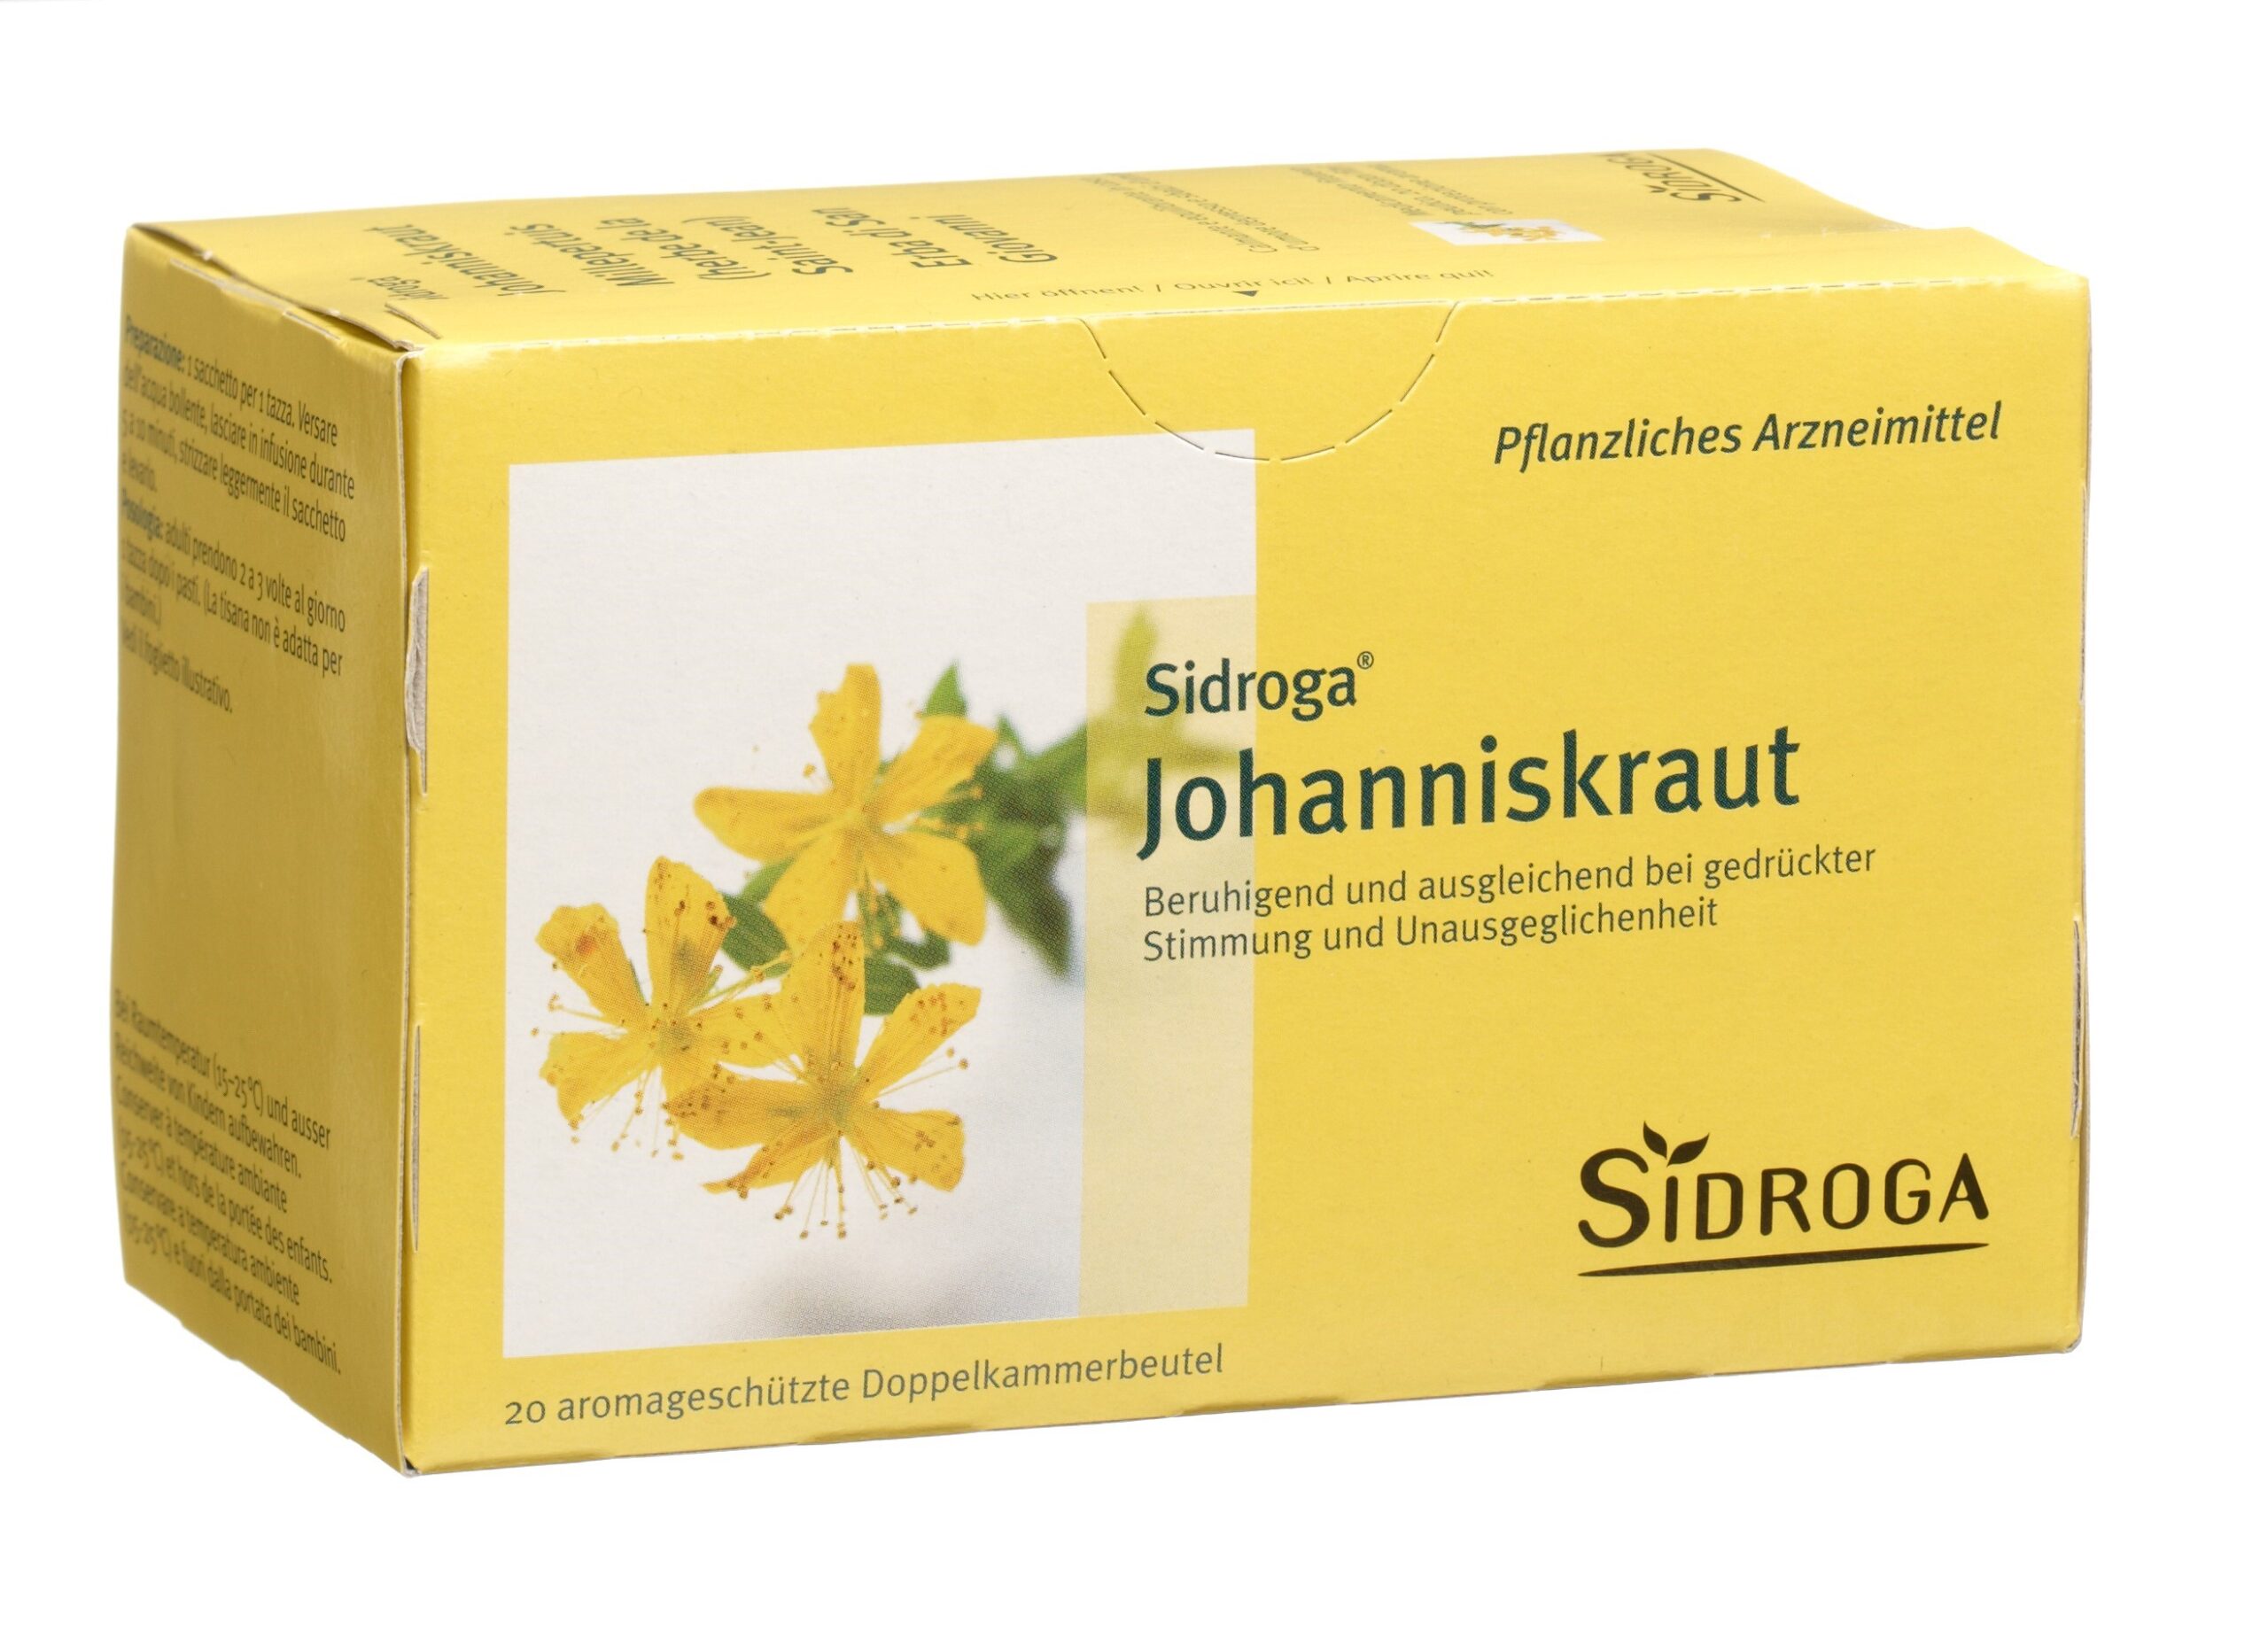 SIDROGA Johanniskraut 20 Btl 1.75 g